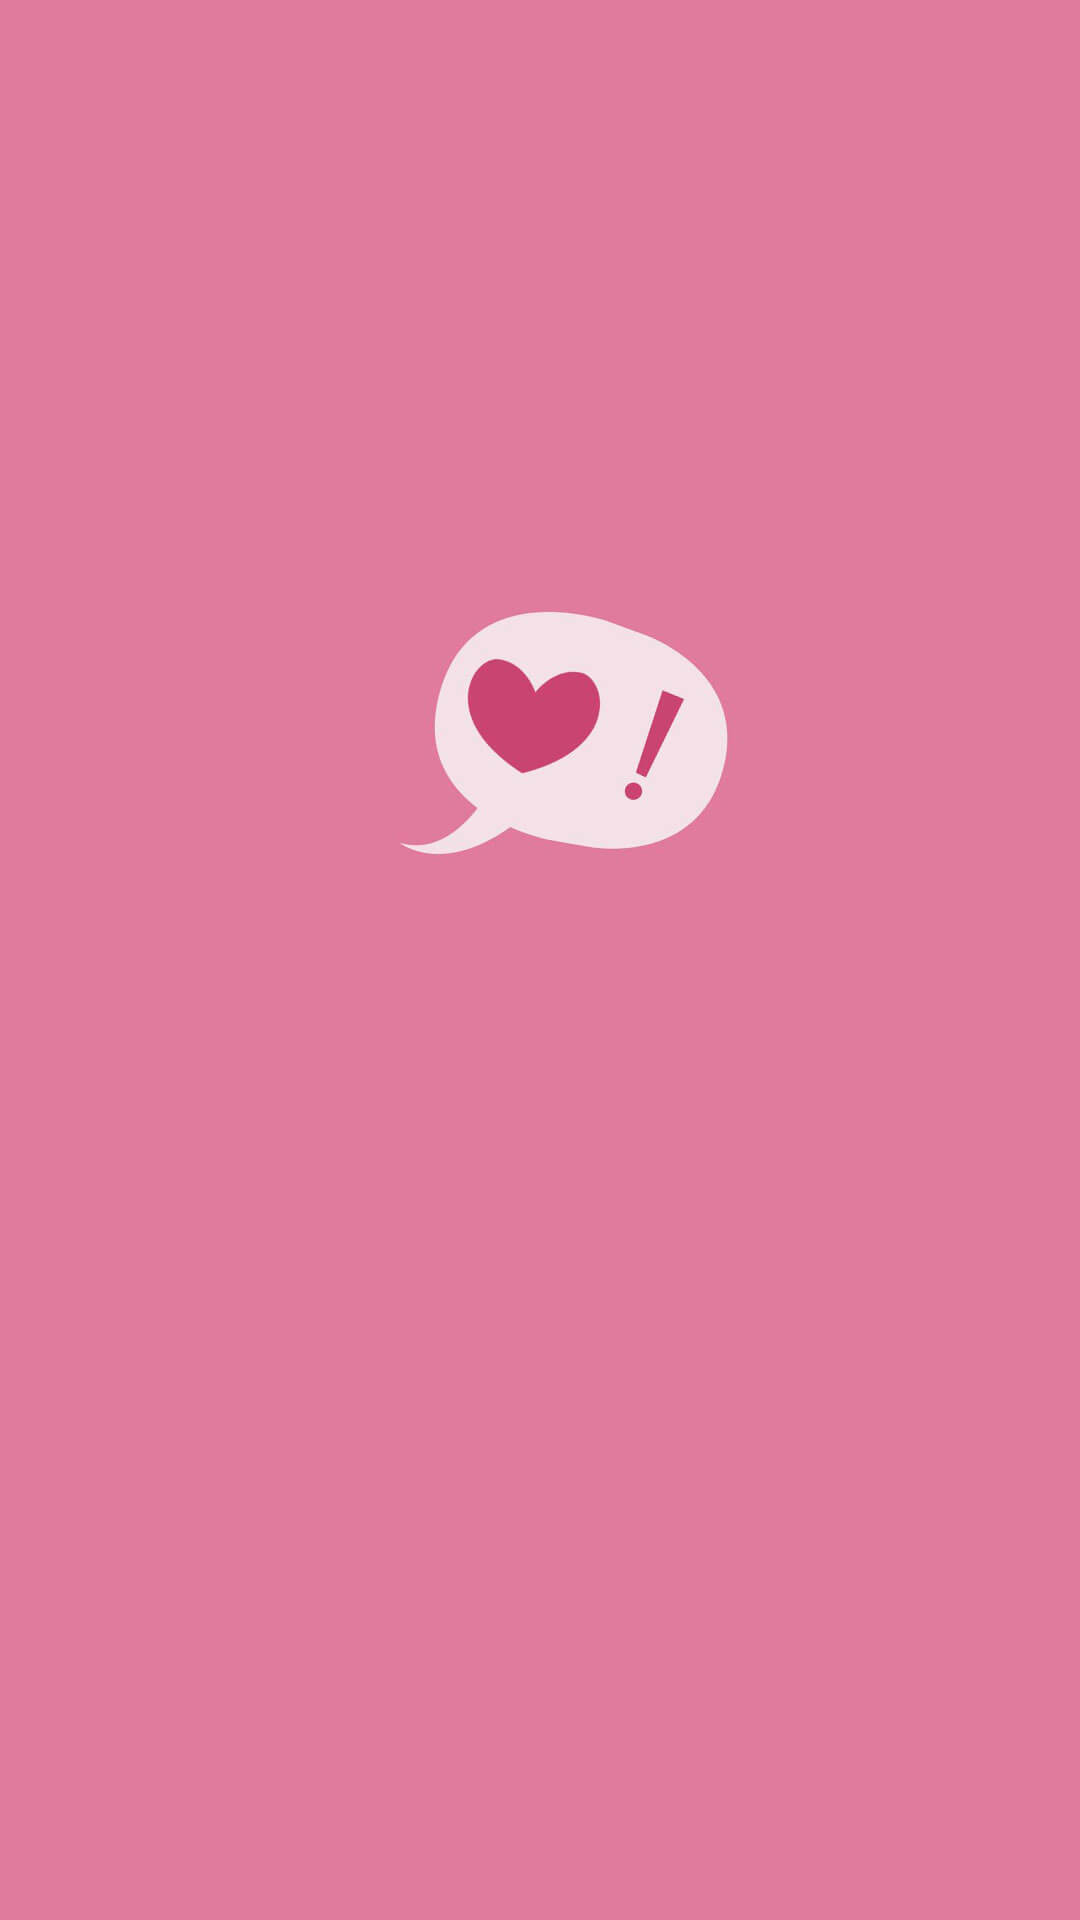 sfondi tumblr hd,rosa,rosso,cuore,font,grafica